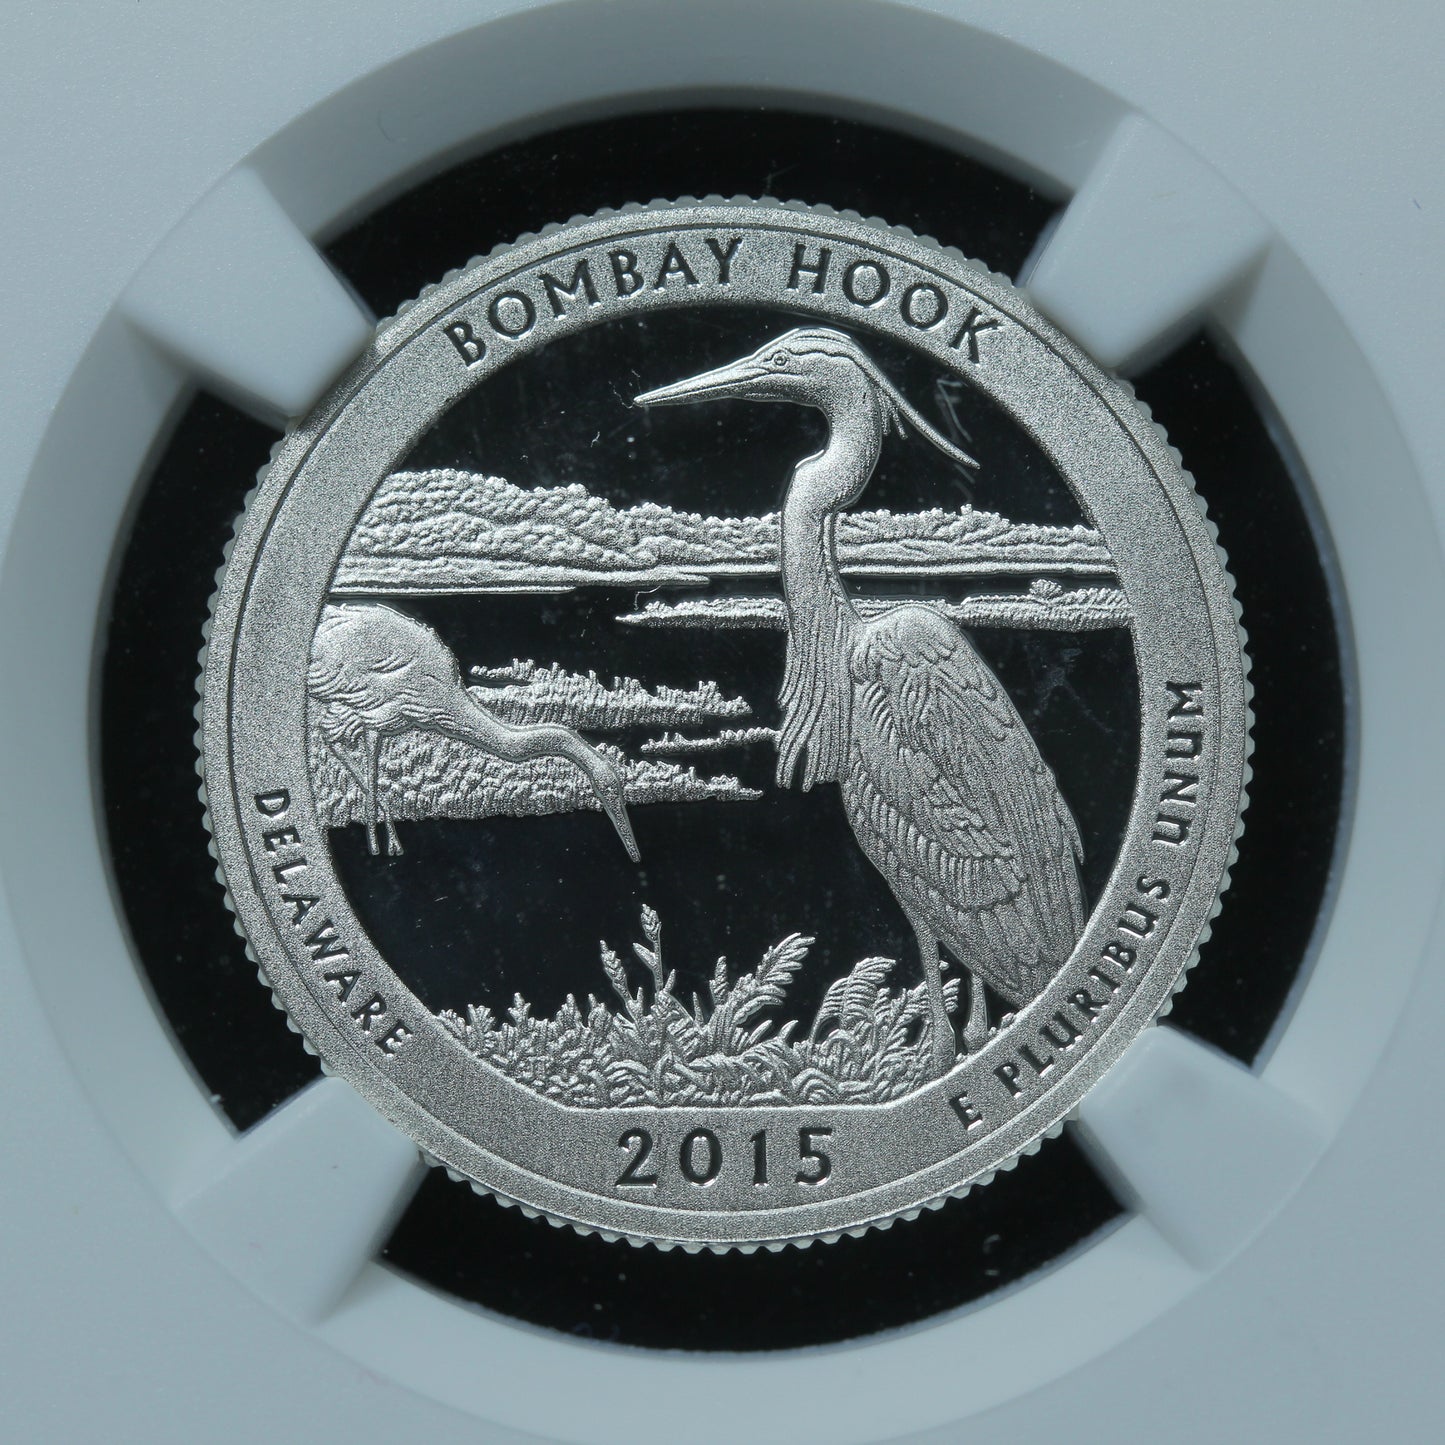 2015-S 25c Bombay Hook Delaware Silver Quarter NGC PF 69 UCAM ER